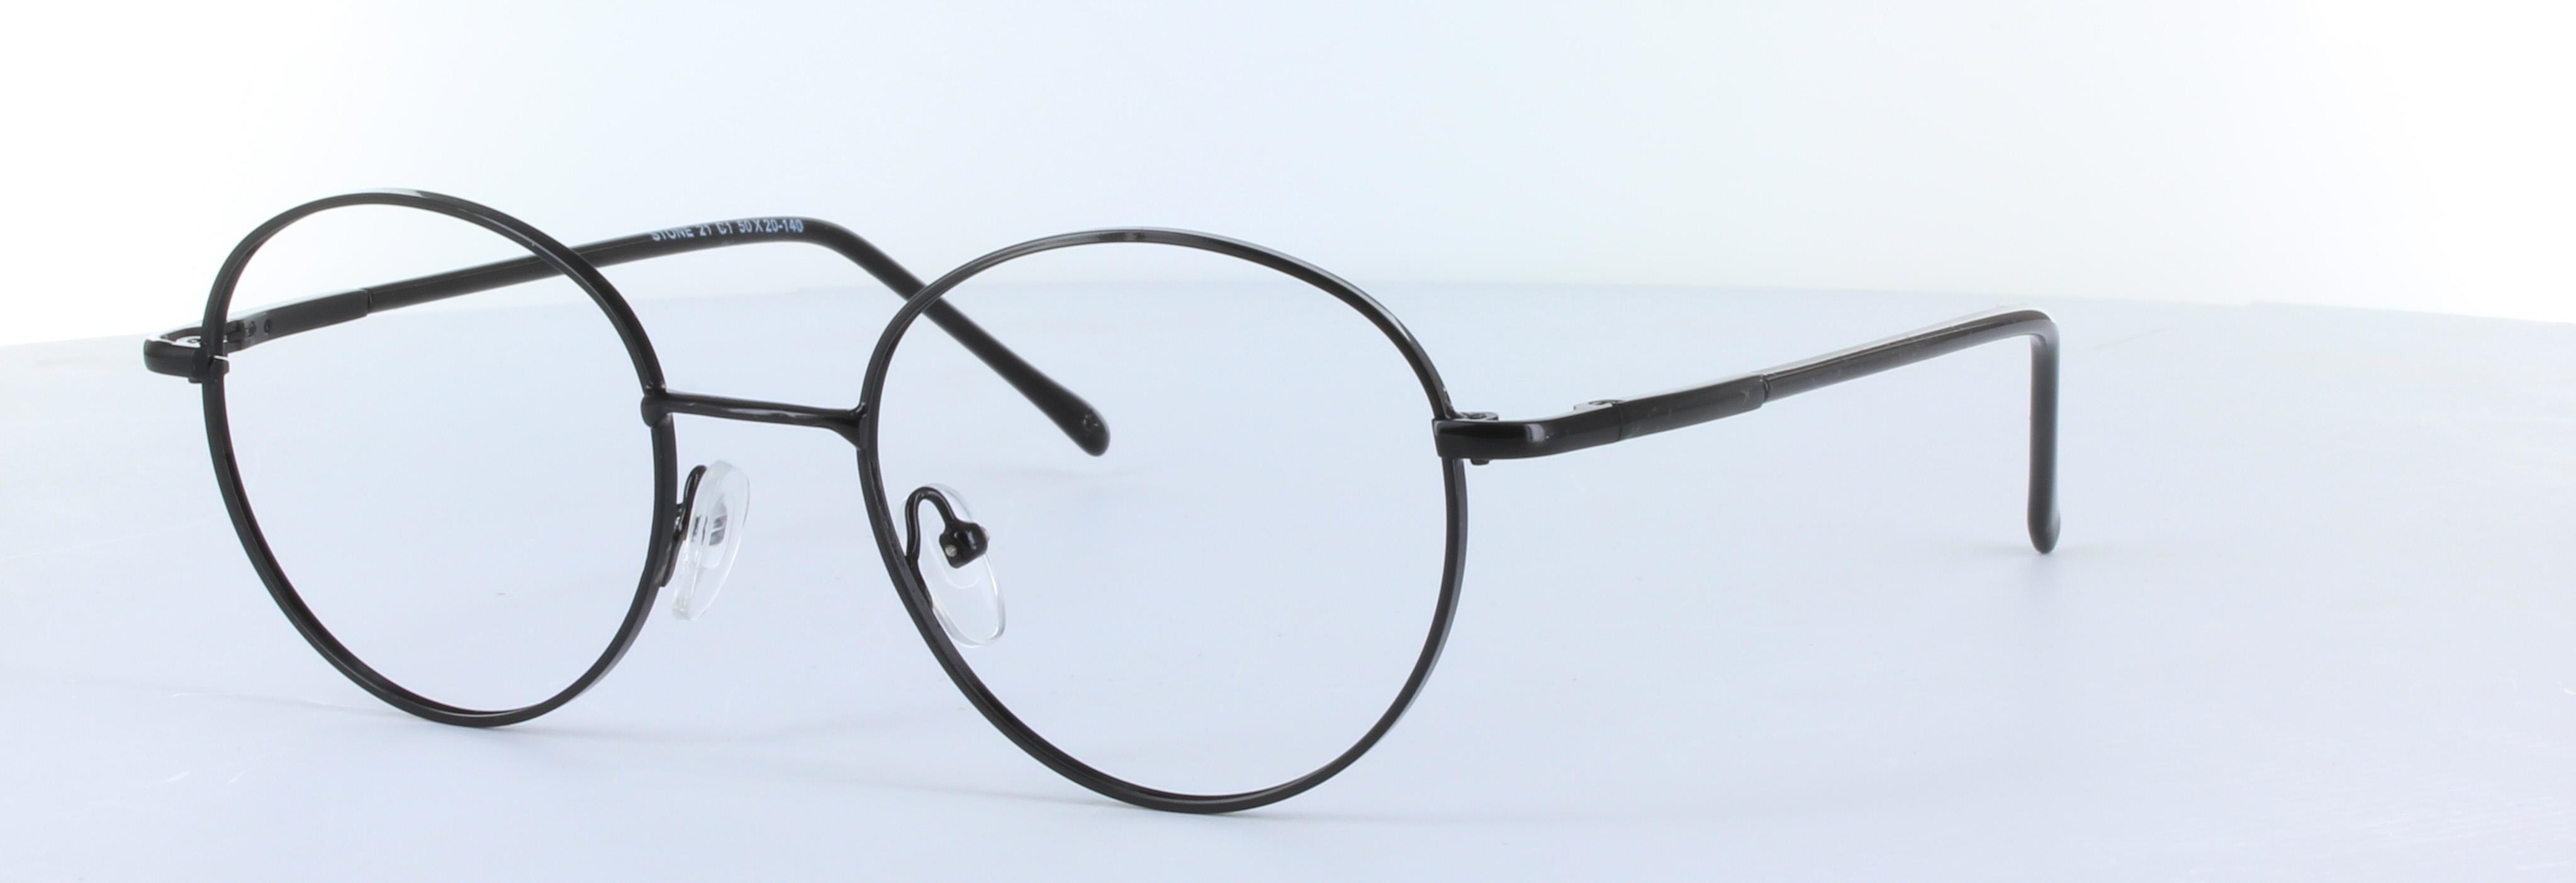 Discus Black Full Rim Round Metal Sunglasses - Image View 4